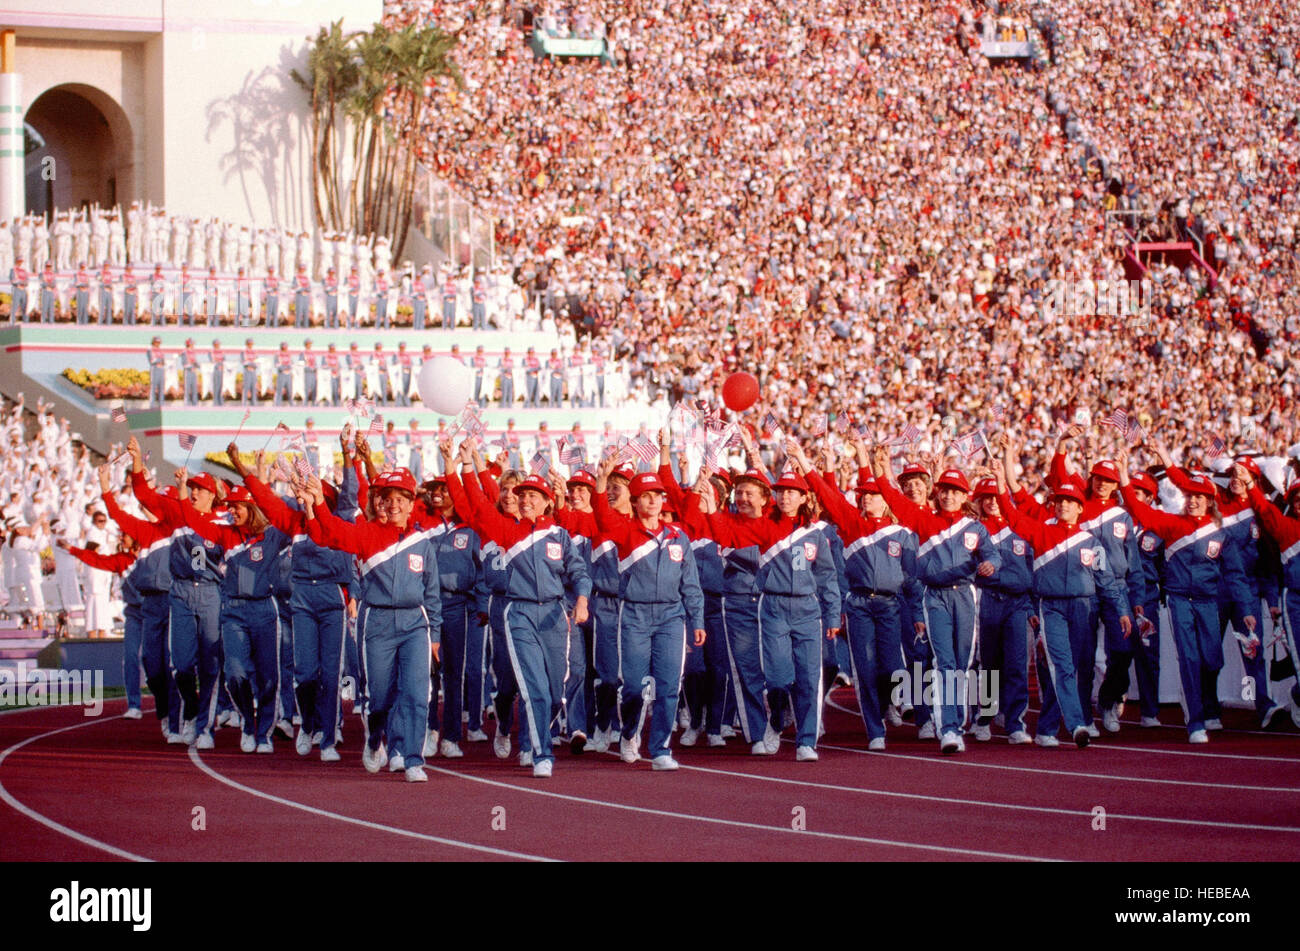 Mitglieder des olympischen Teams winken Zuschauern wie sie während der Eröffnungszeremonie für die Olympischen Sommerspiele 1984 in LA Kolosseum marschieren. Stockfoto